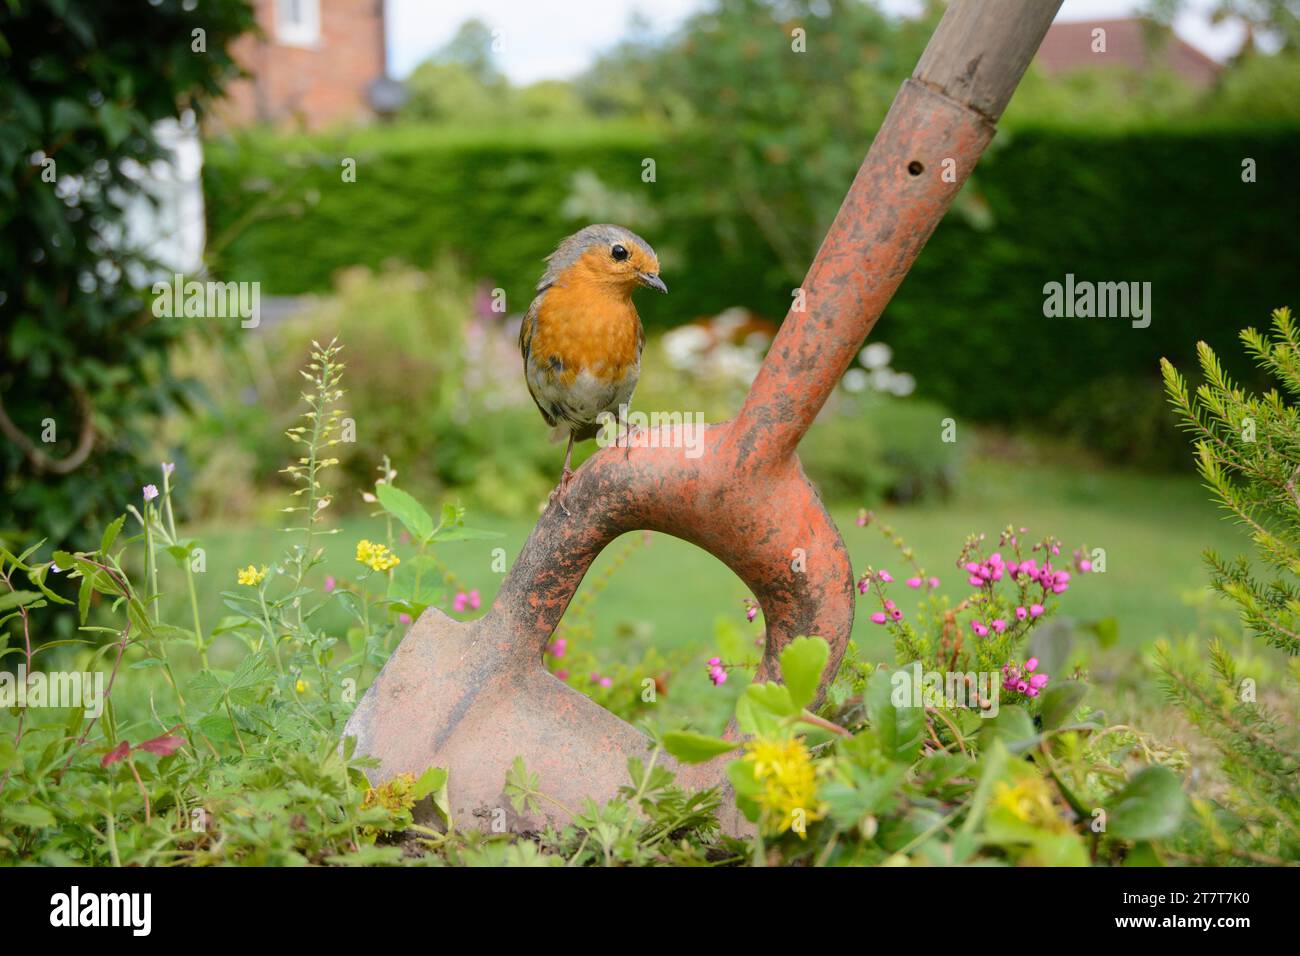 European robin erithacus rubecula, arroccato su una zappa da giardino in un'area selvaggia del giardino. Contea di Durham, Inghilterra, Regno Unito, marzo. Foto Stock